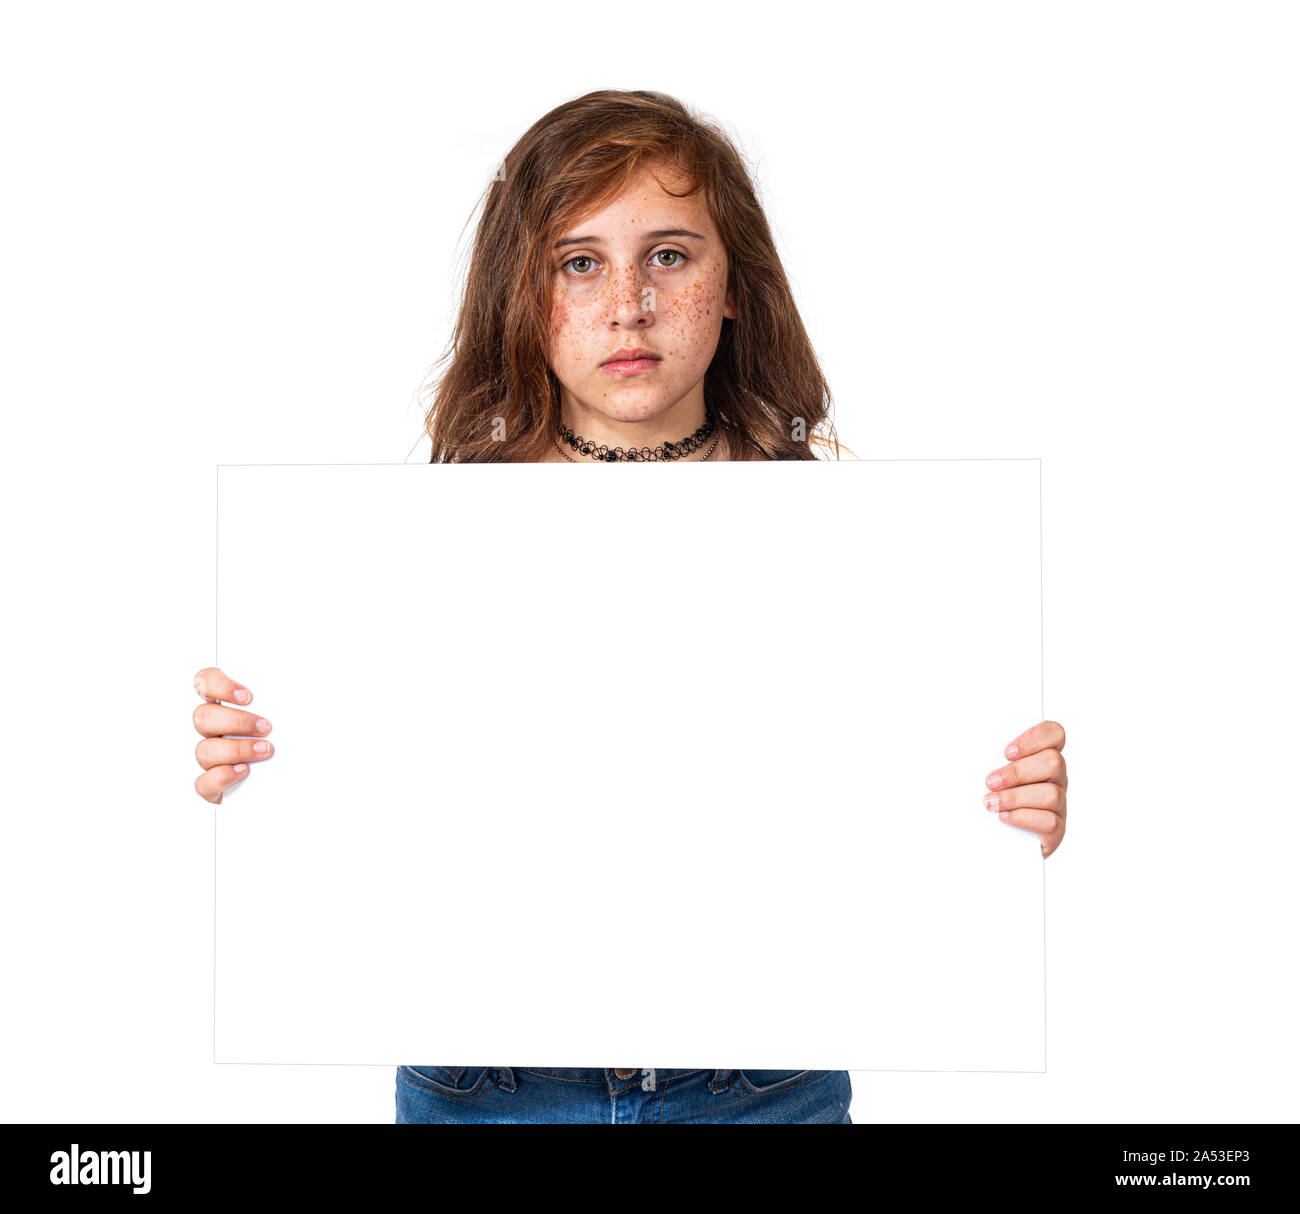 Horizontale studio Aufnahme eines ernsthaften Suchen vor - jugendlich Mädchen mit Sommersprossen Holding ein leeres weißes Schild. Weißer Hintergrund. Kopieren Sie Platz. Stockfoto